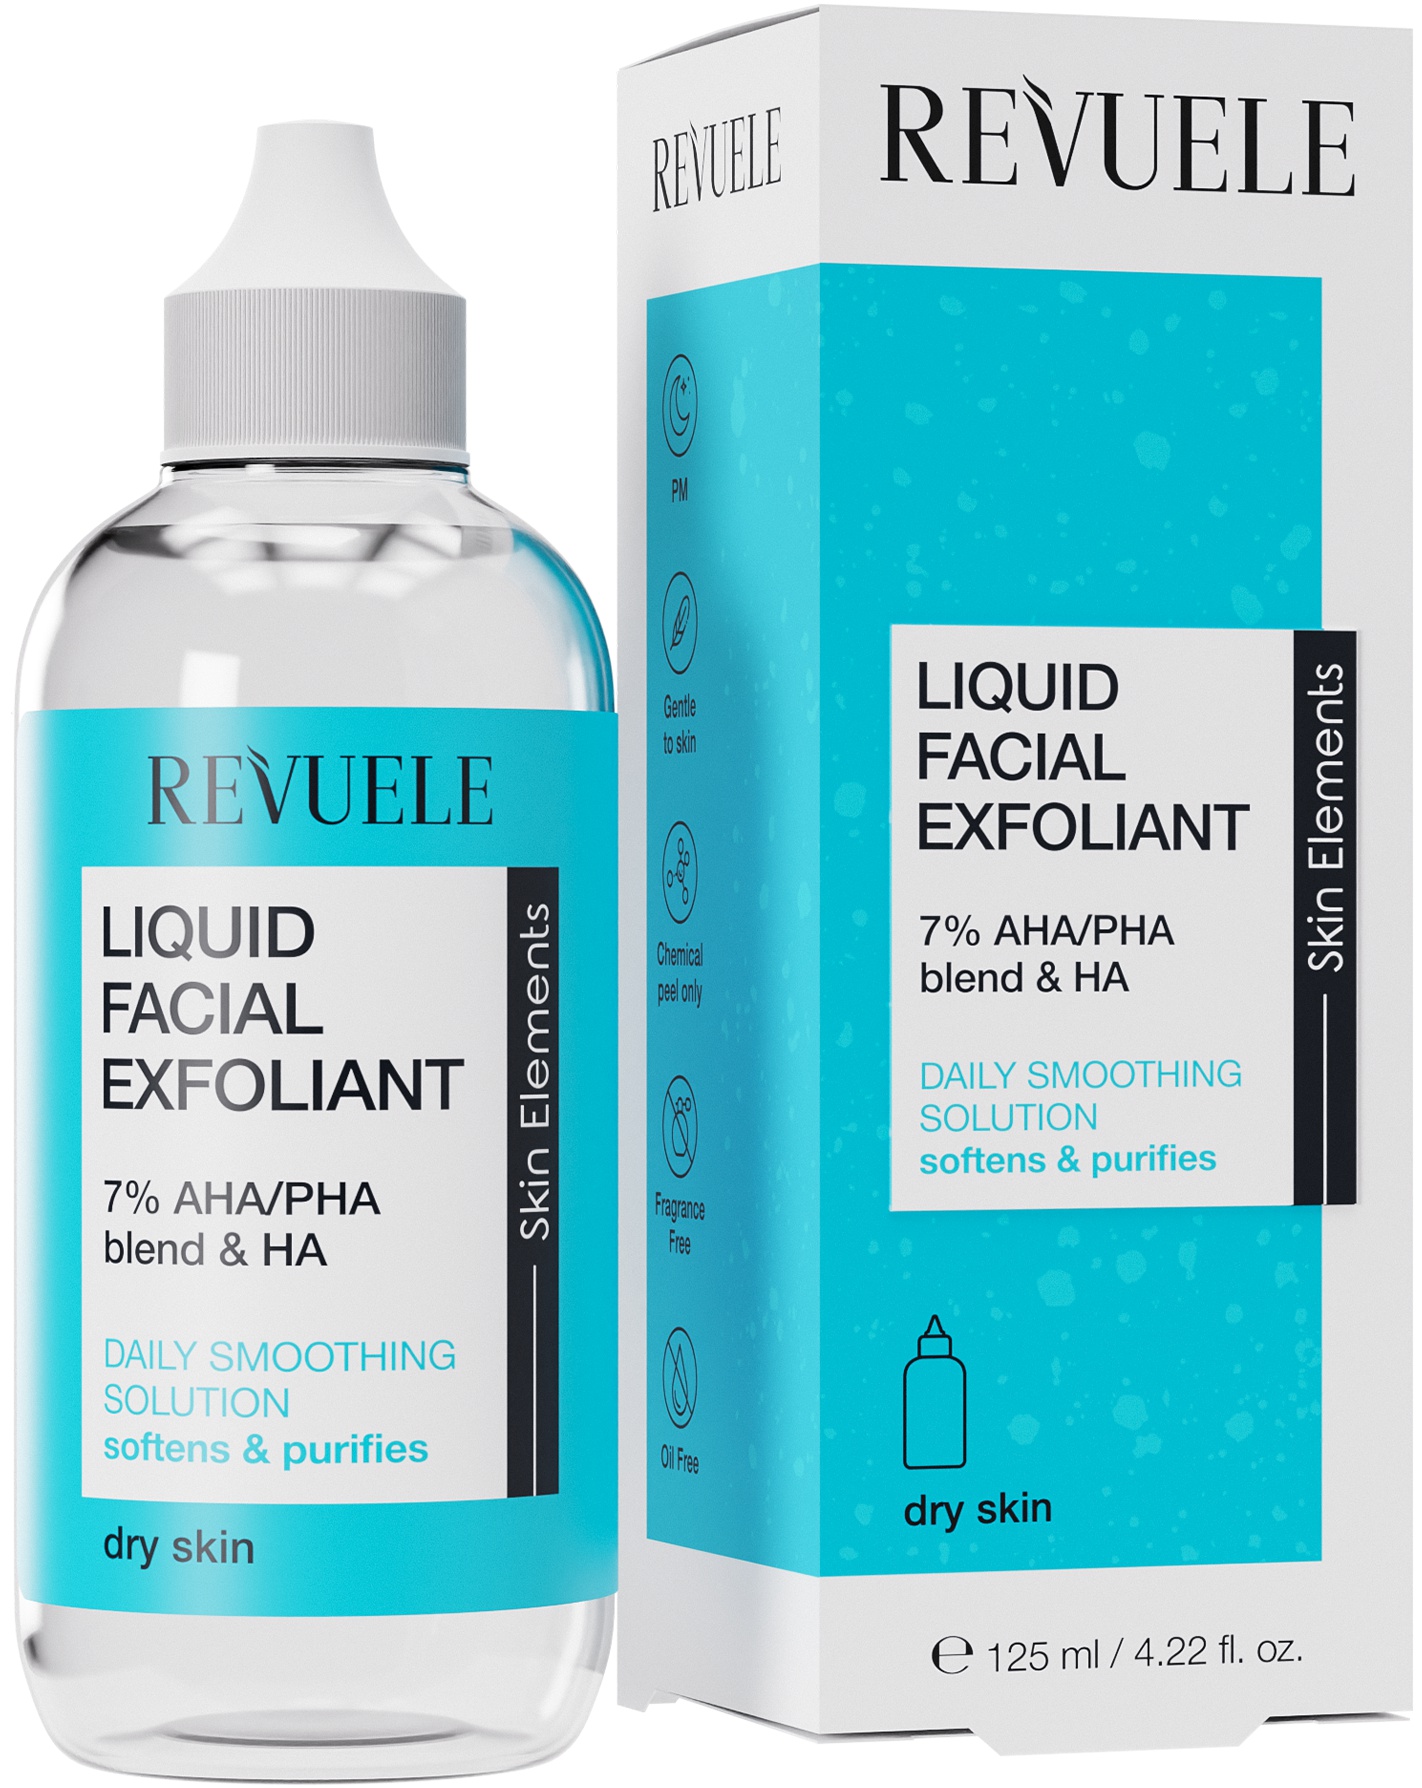 Revuele Liquid Facial Exfoliant 7% AHA/PHA Blend & HA